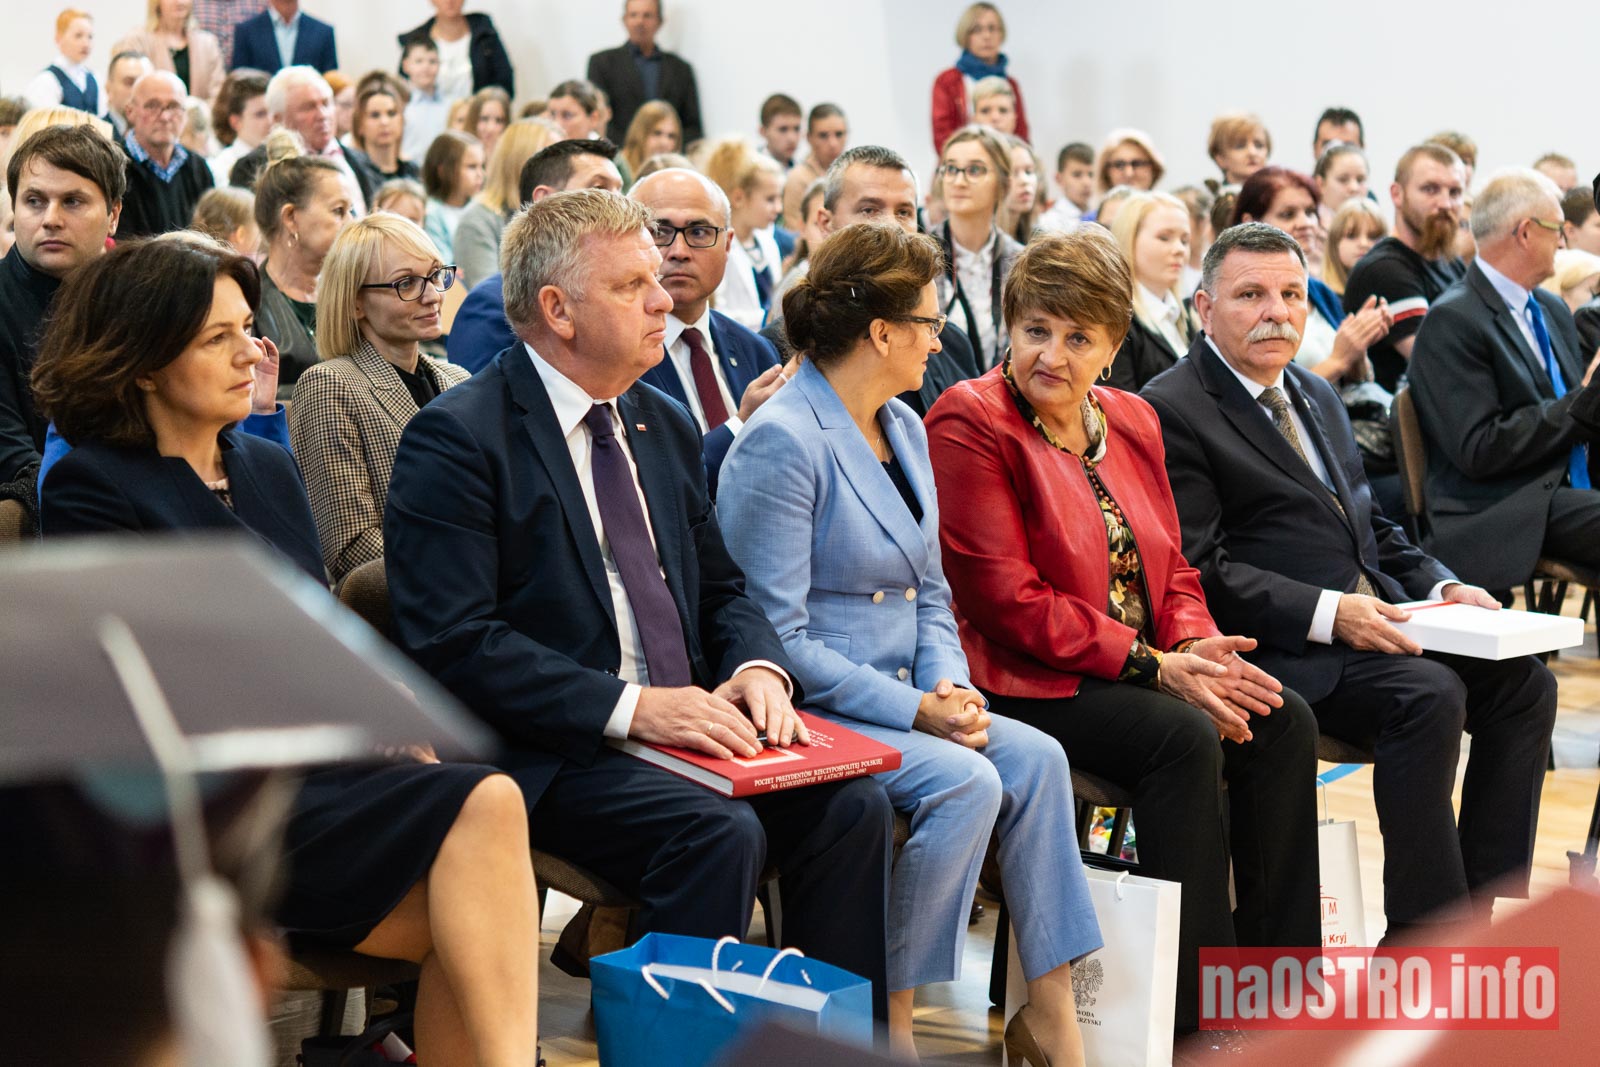 NaOSTRO Otwarcie Szkoły w Bałtowie-129